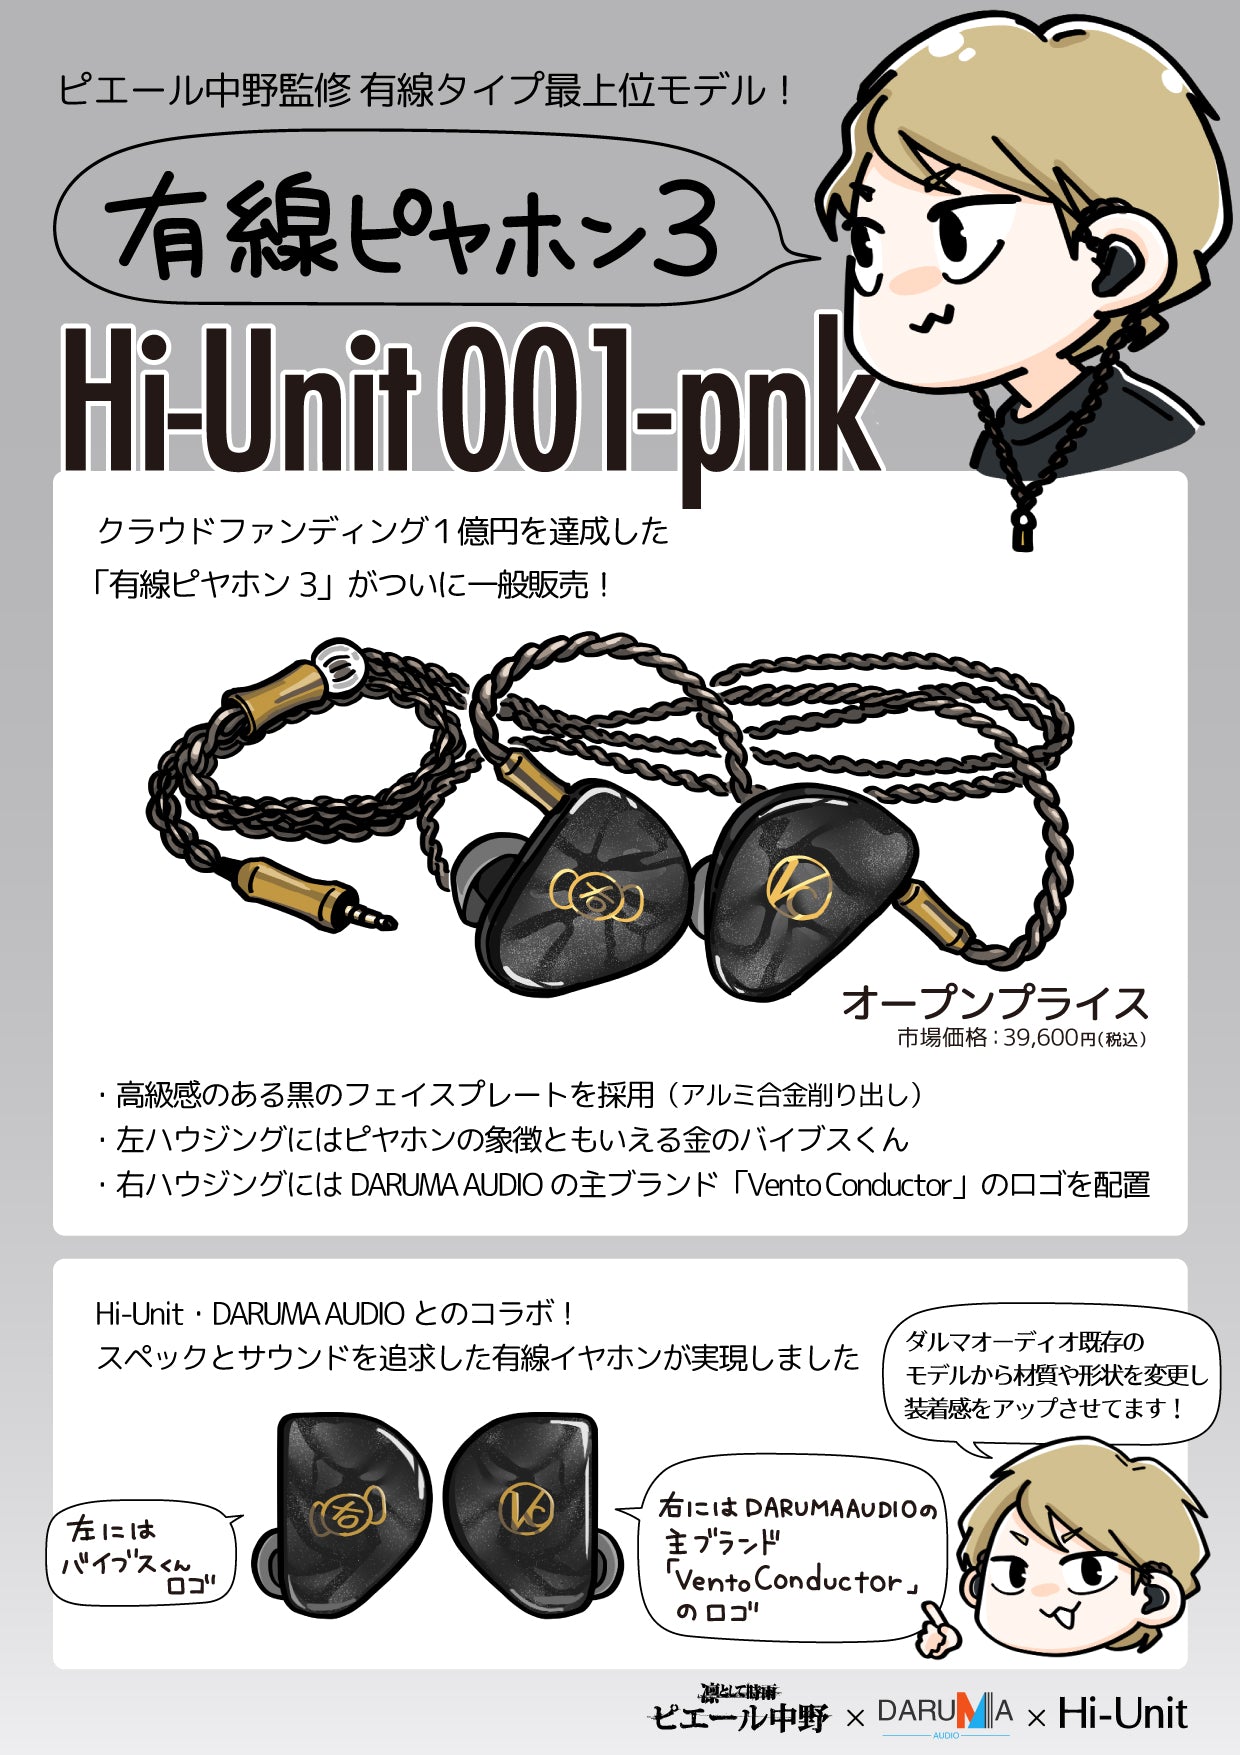 美品　有線ピヤホン3 Hi-Unit 001-pnk